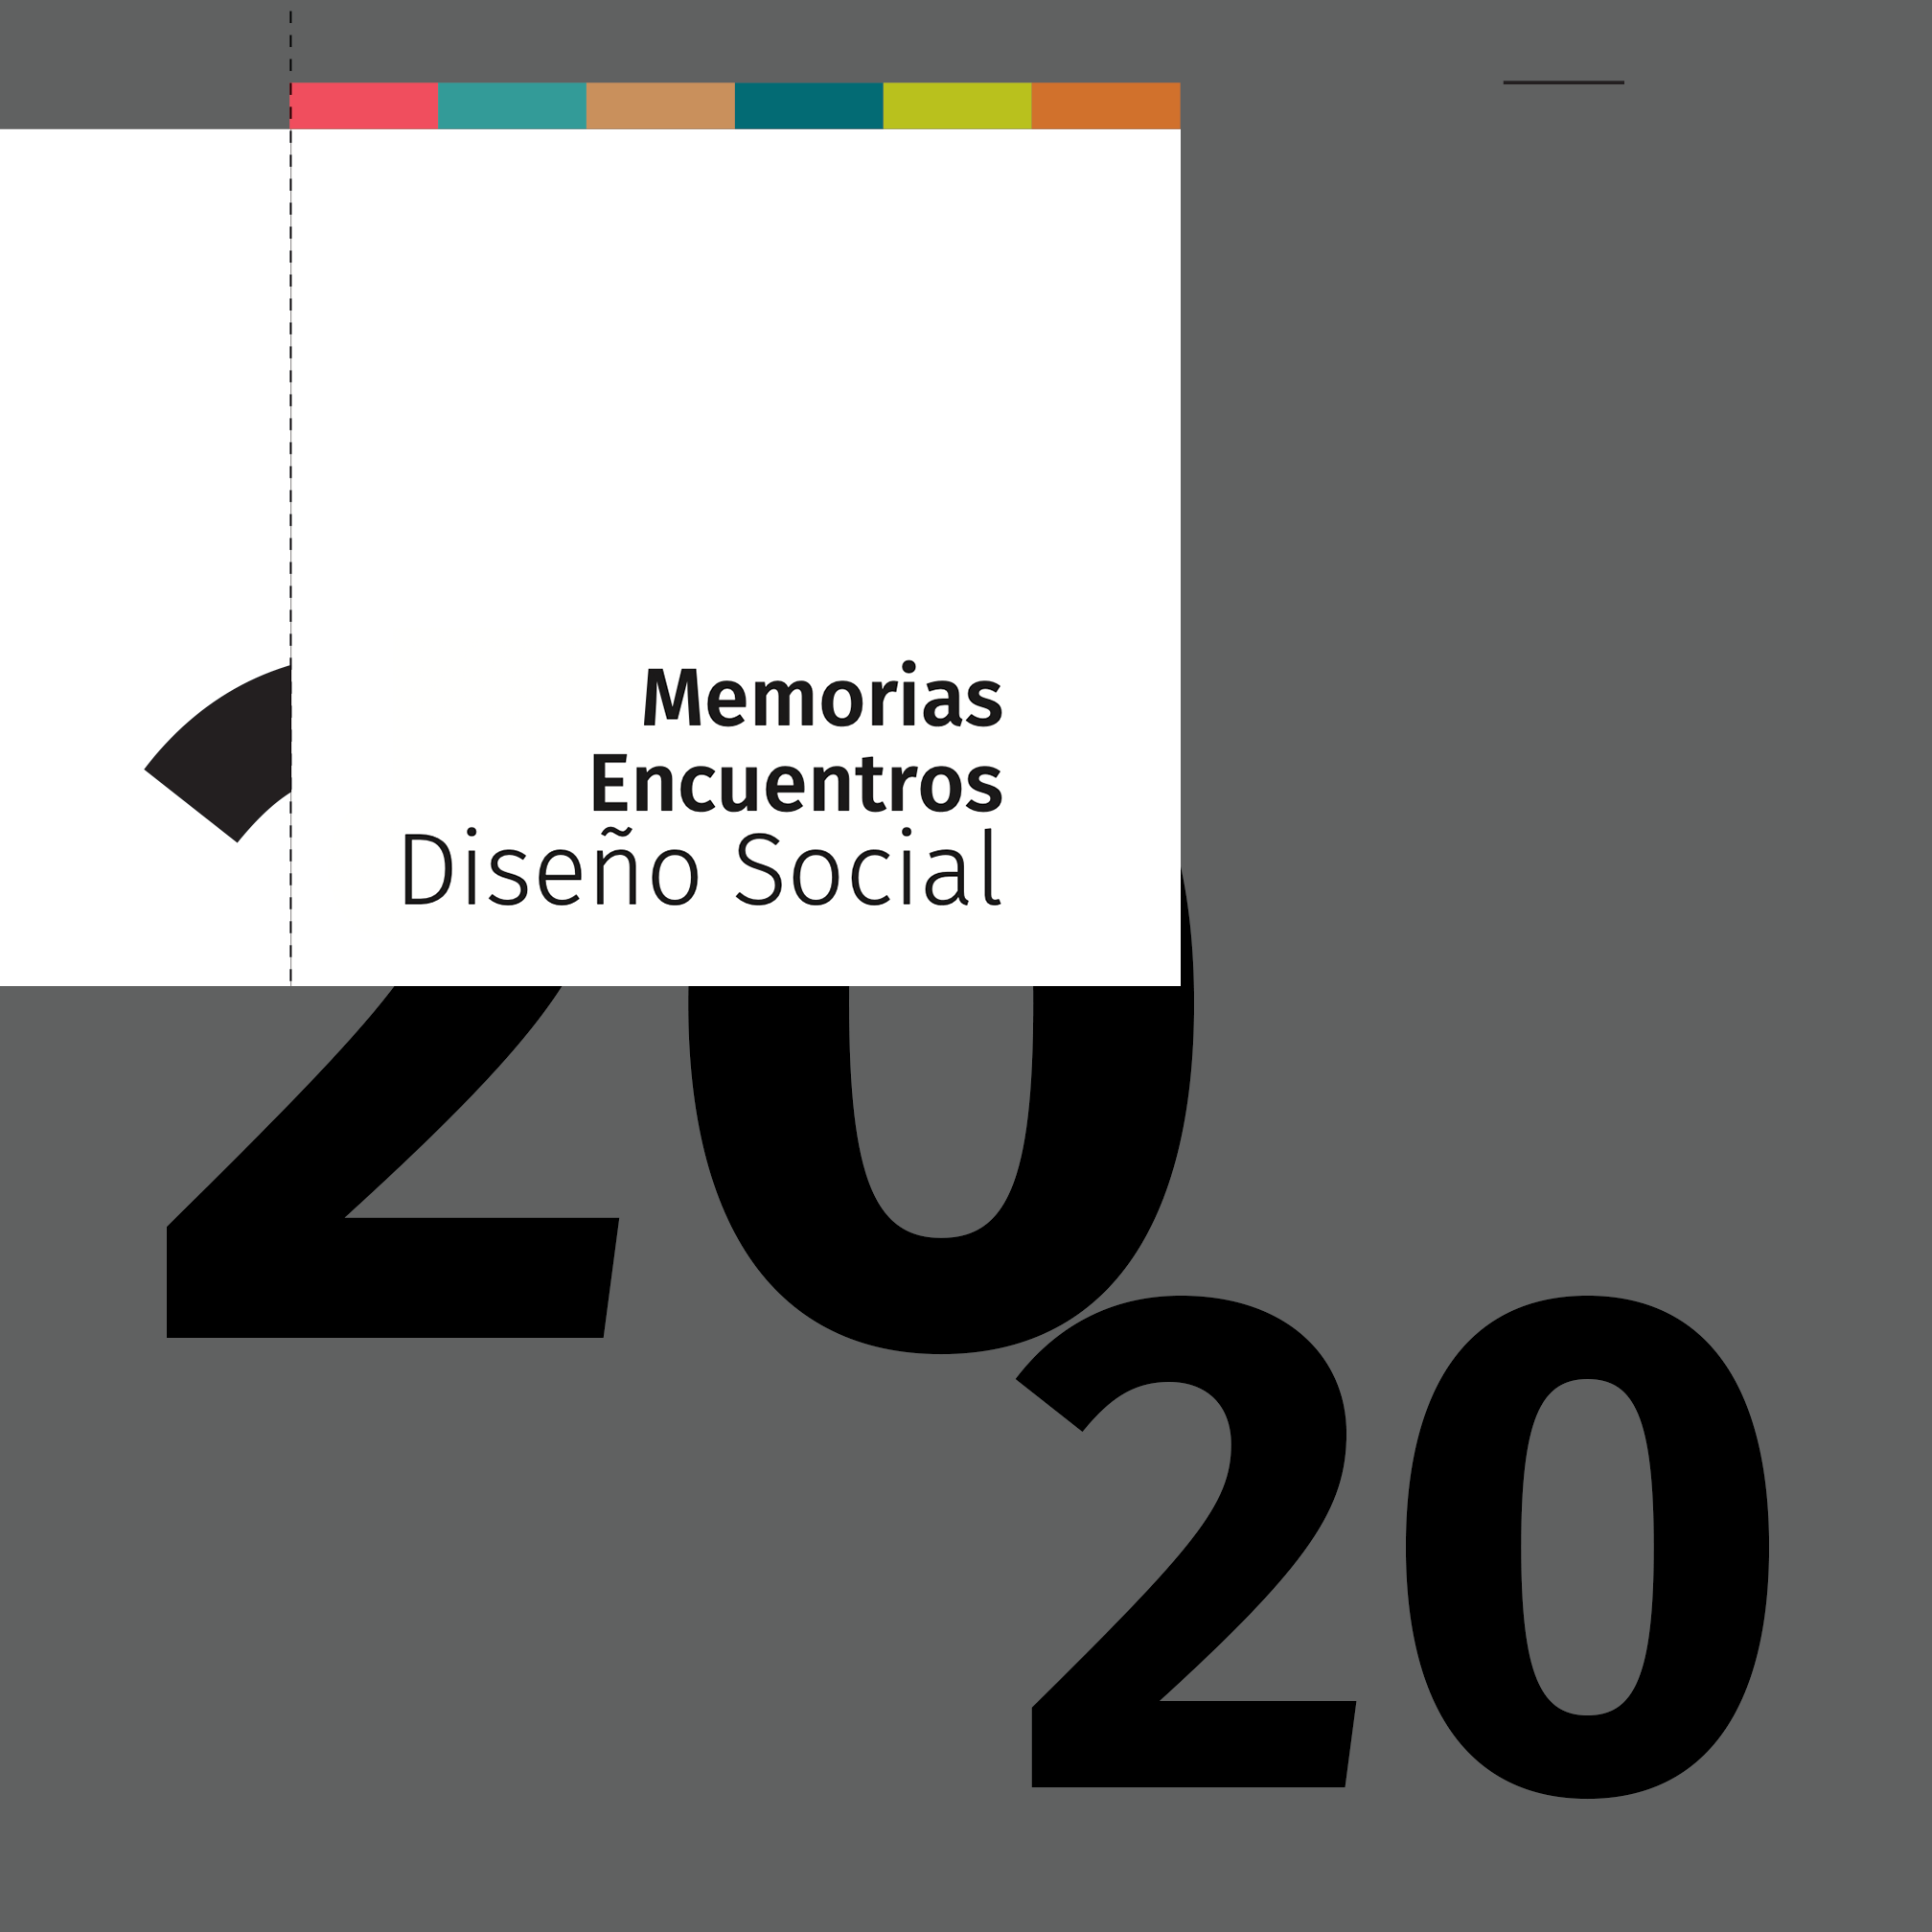 Encuentros Diseño Social 2020